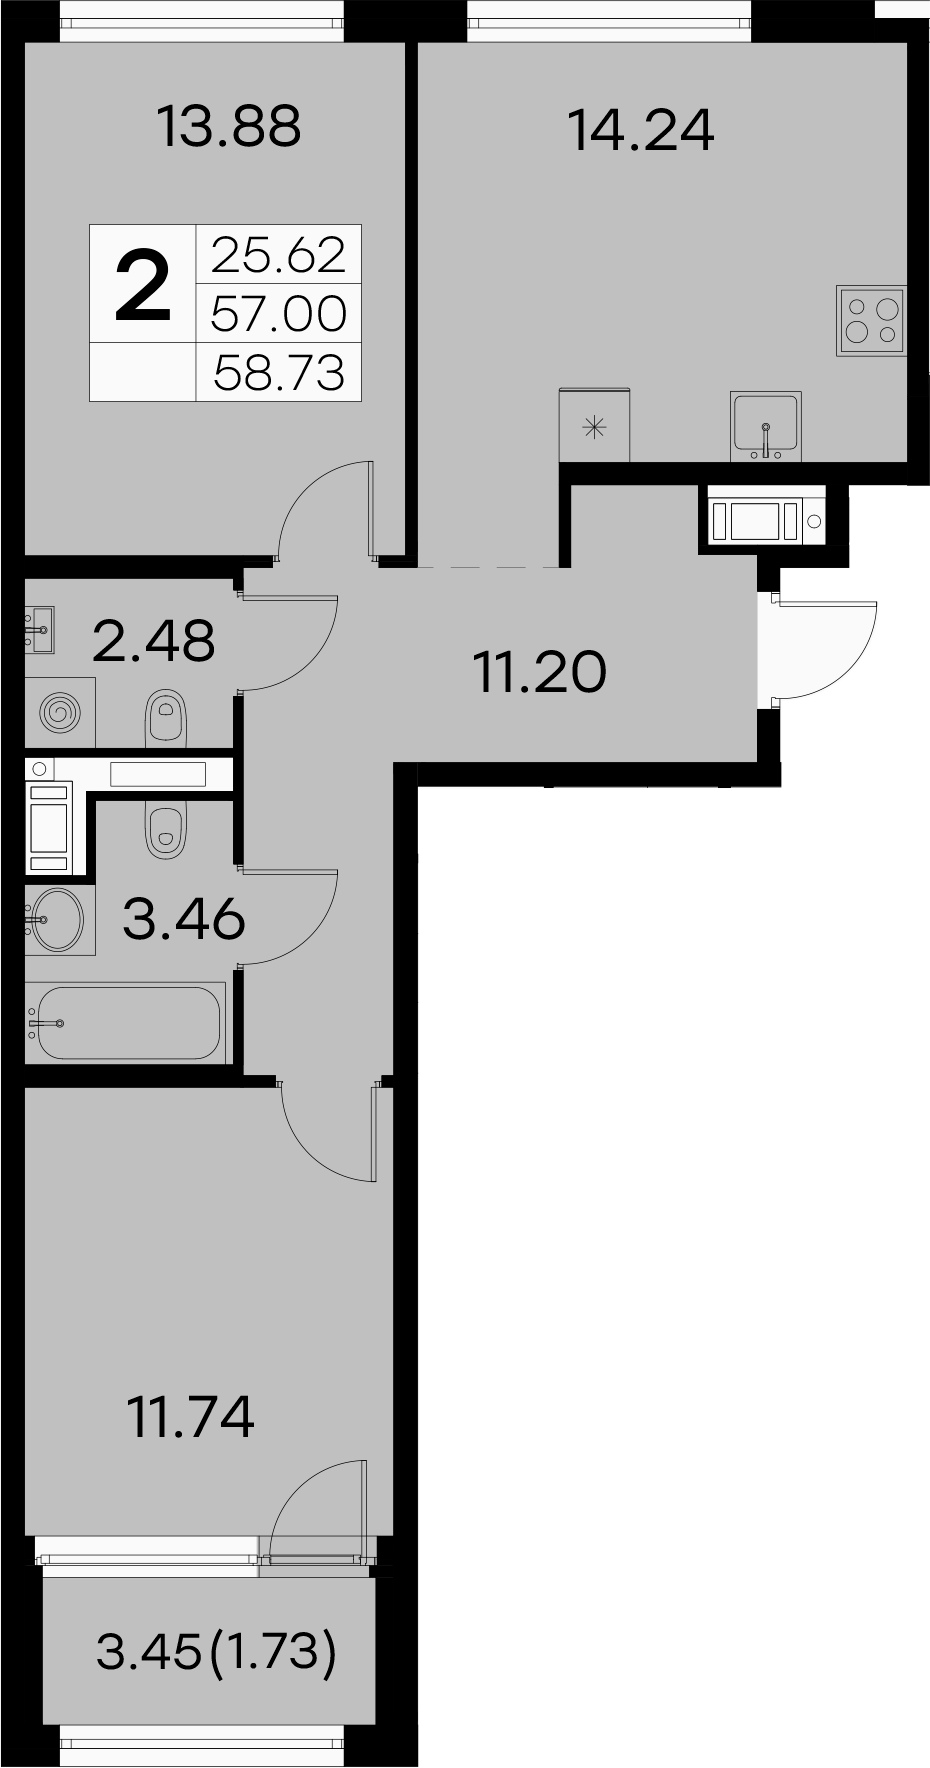 2-к.кв, 58.73 м²